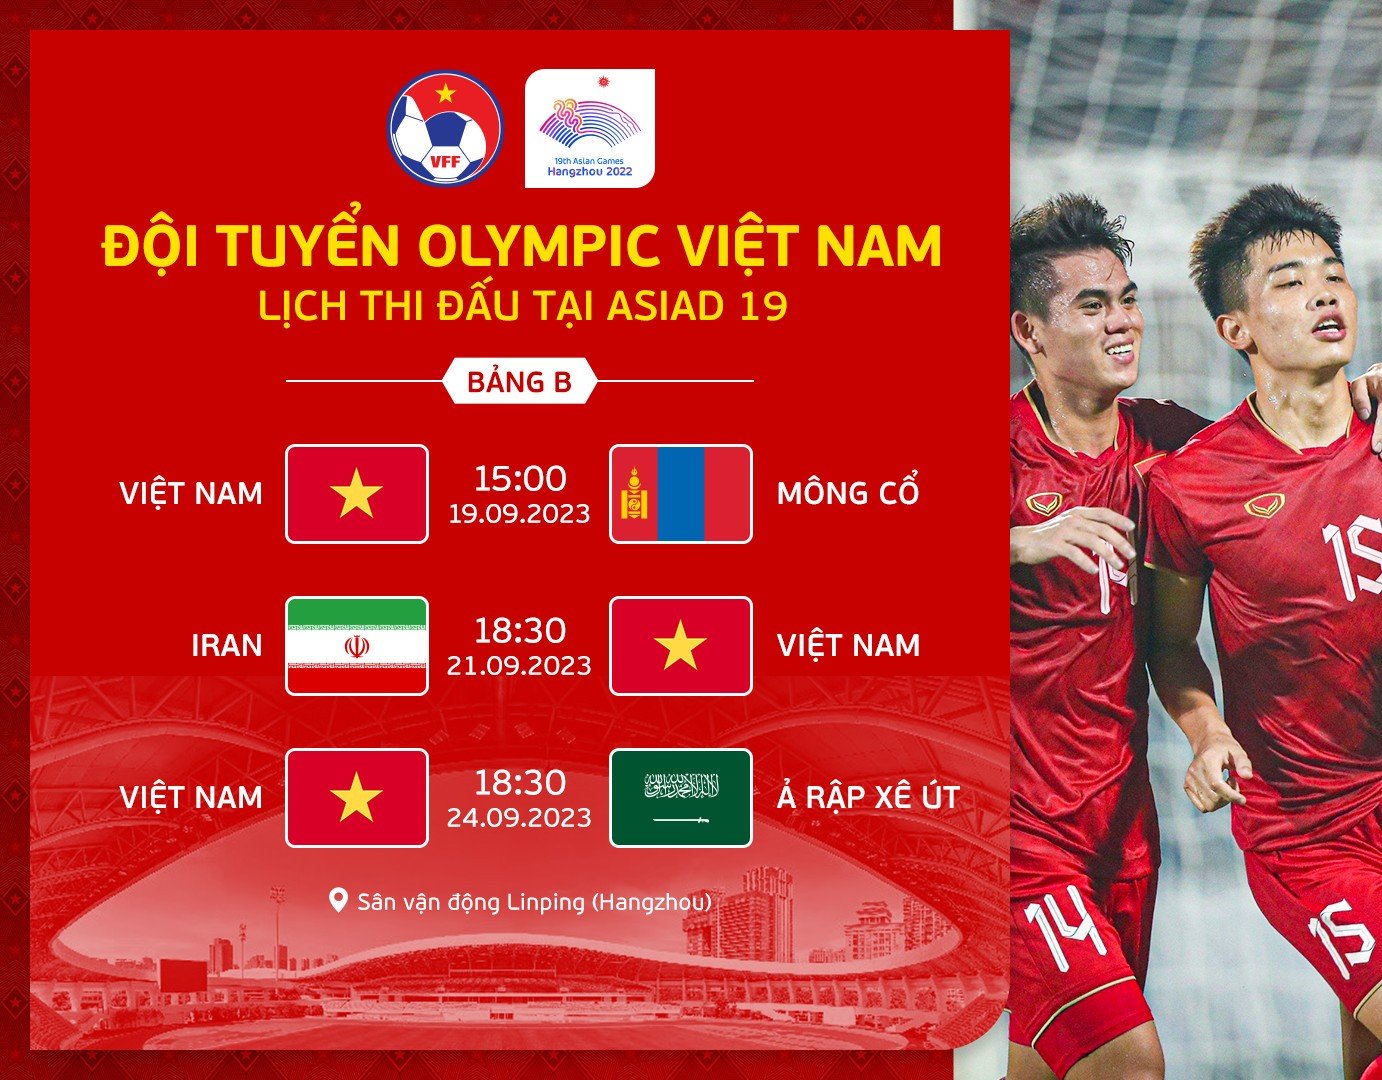 Lịch thi đấu của Olympic Việt Nam tại Asiad 19